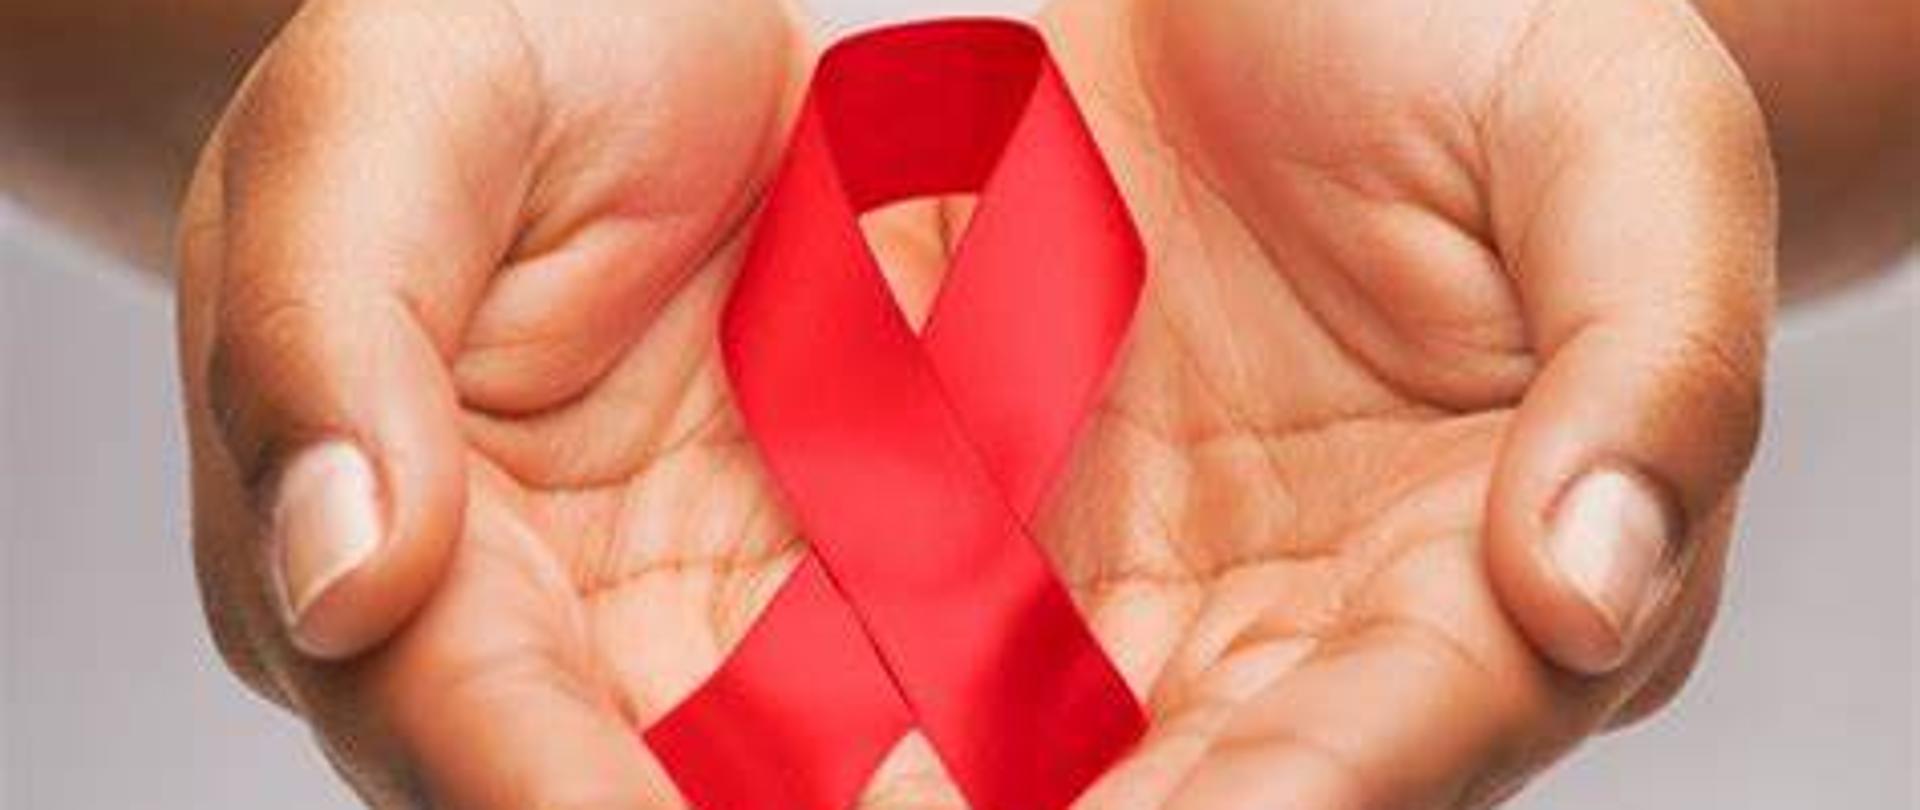 Ważne_informacje_dotyczące_HIV_i_AIDS_dla_obywateli_Ukrainy